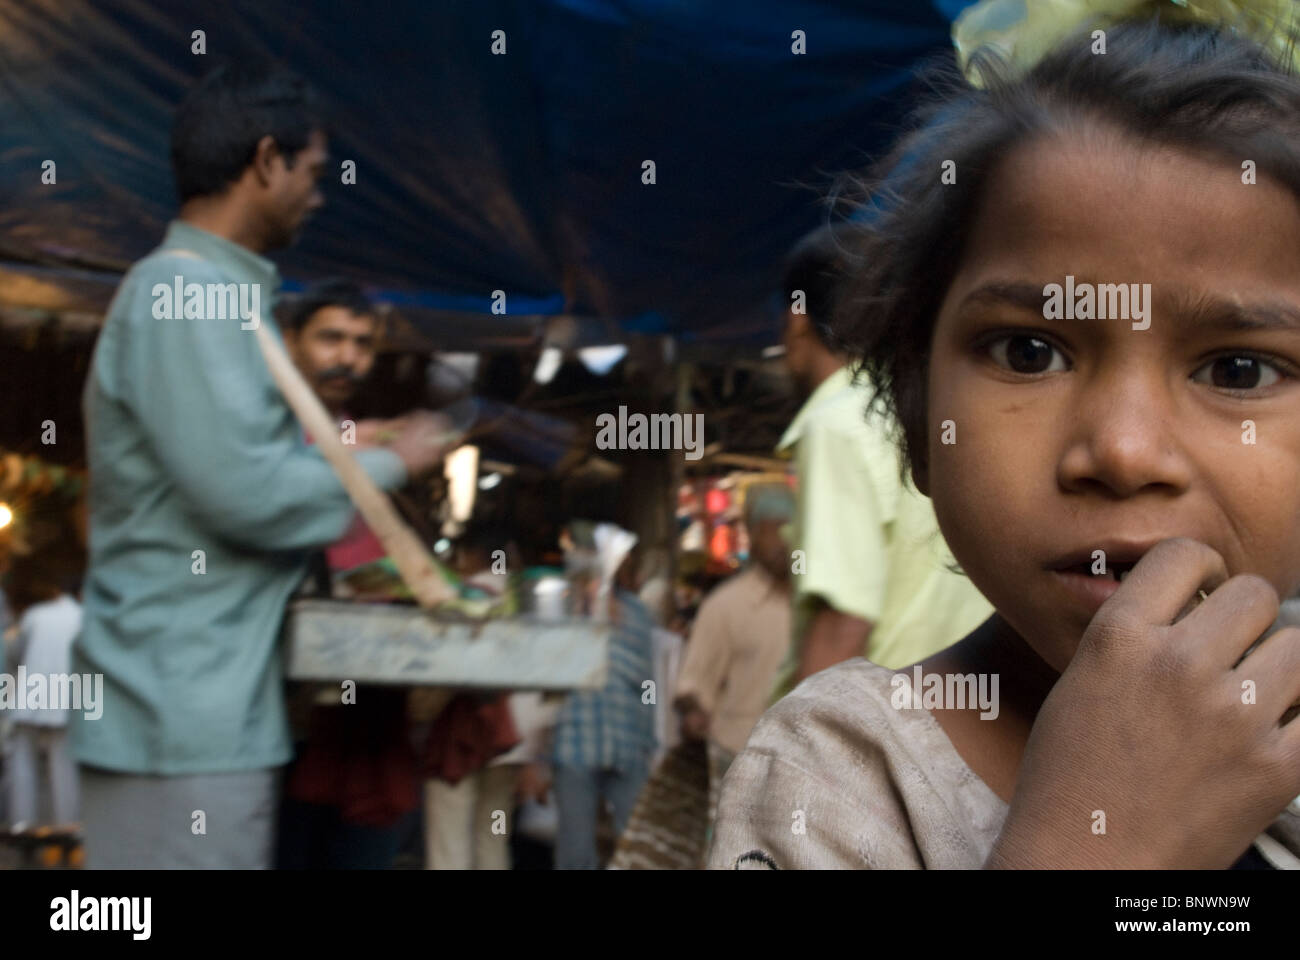 Junge Mädchen auf der Suche auf der Kamera, Crawford Market, Mumbai, India Stockfoto